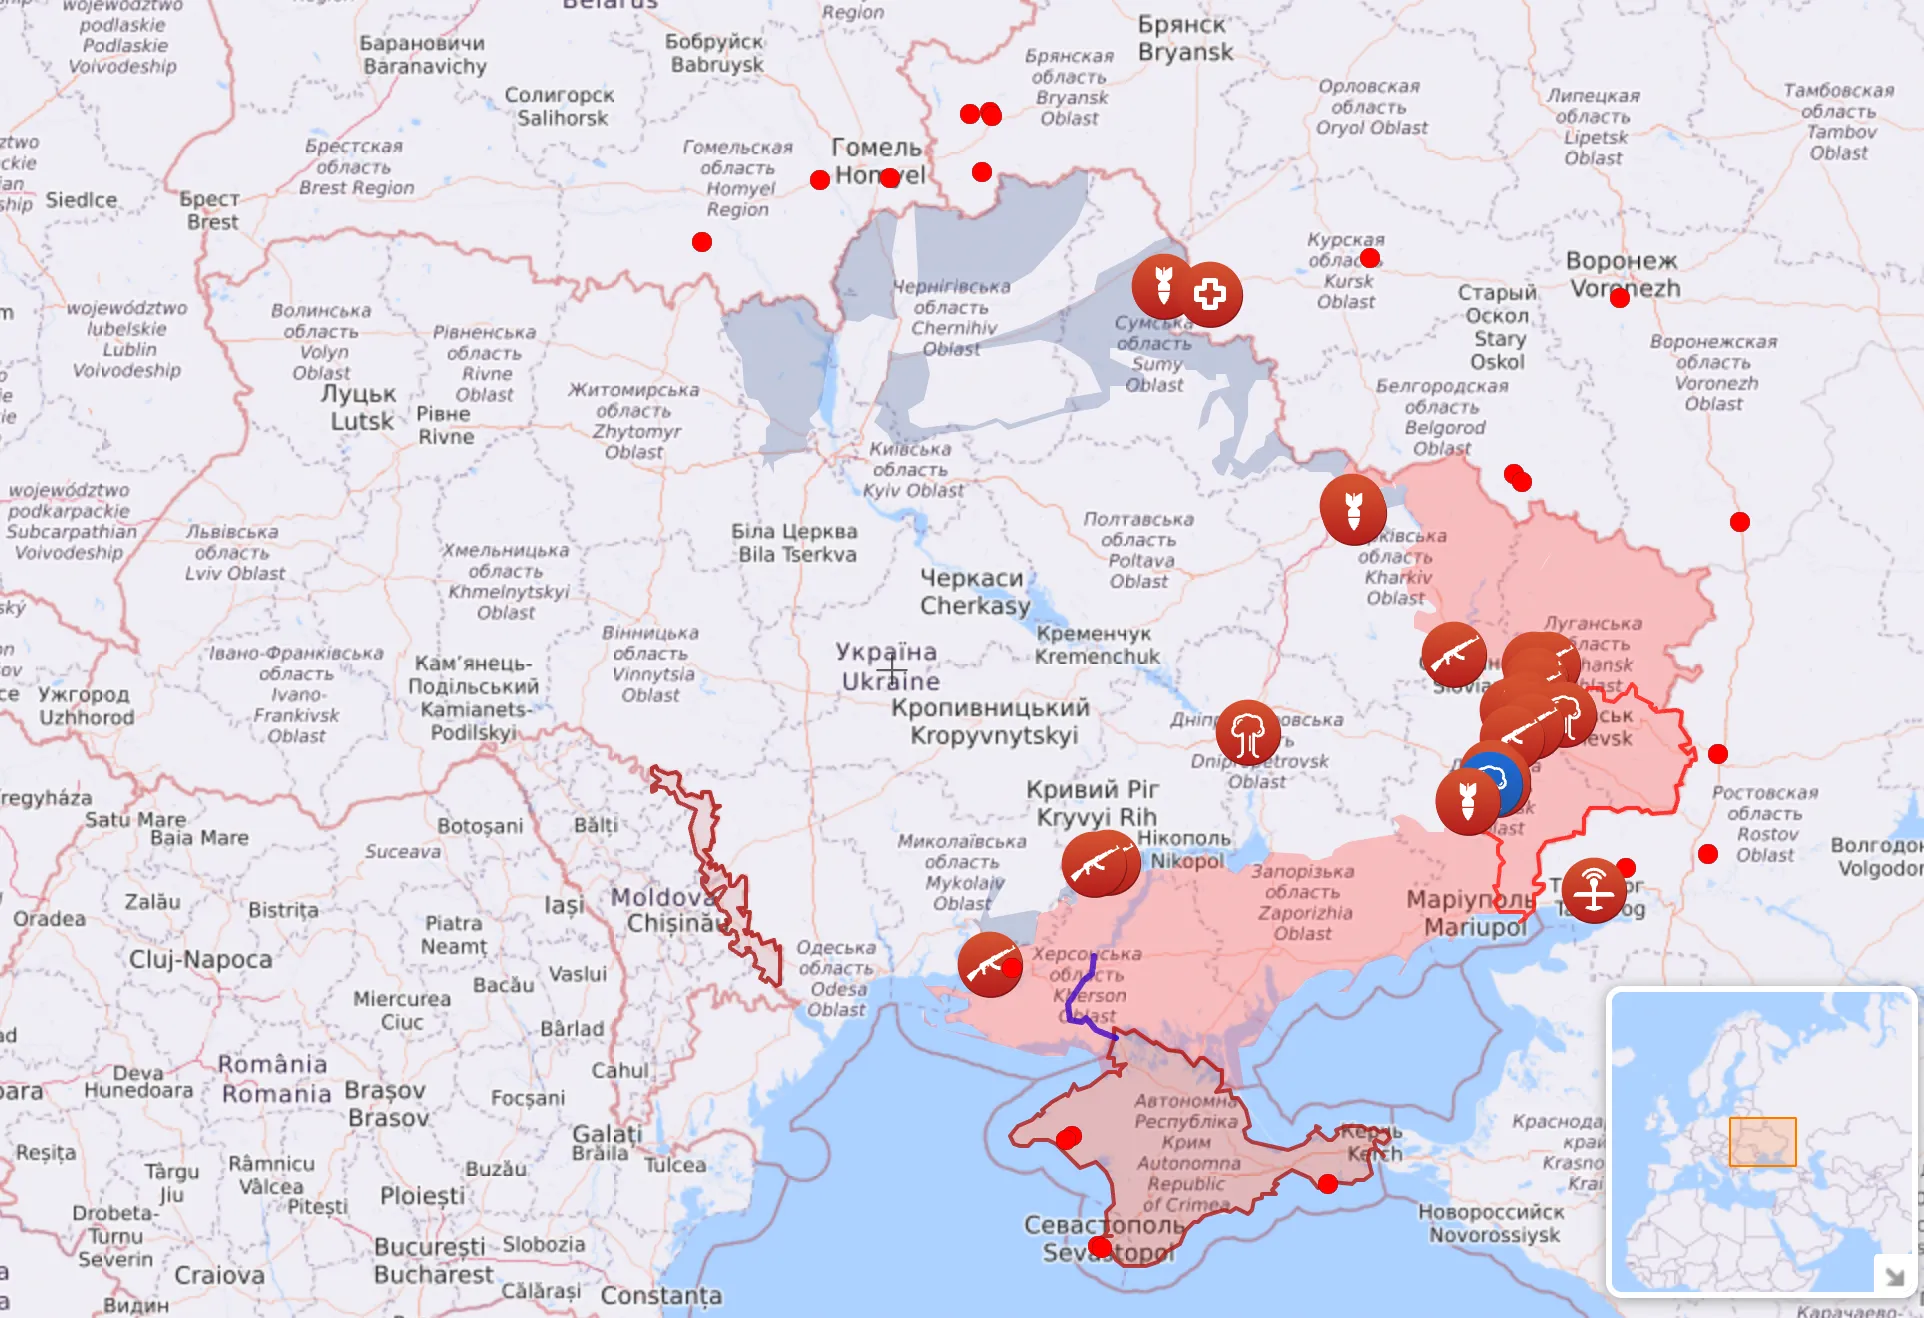 Так виглядає карта бойових дій в Україні станом на 5 липня